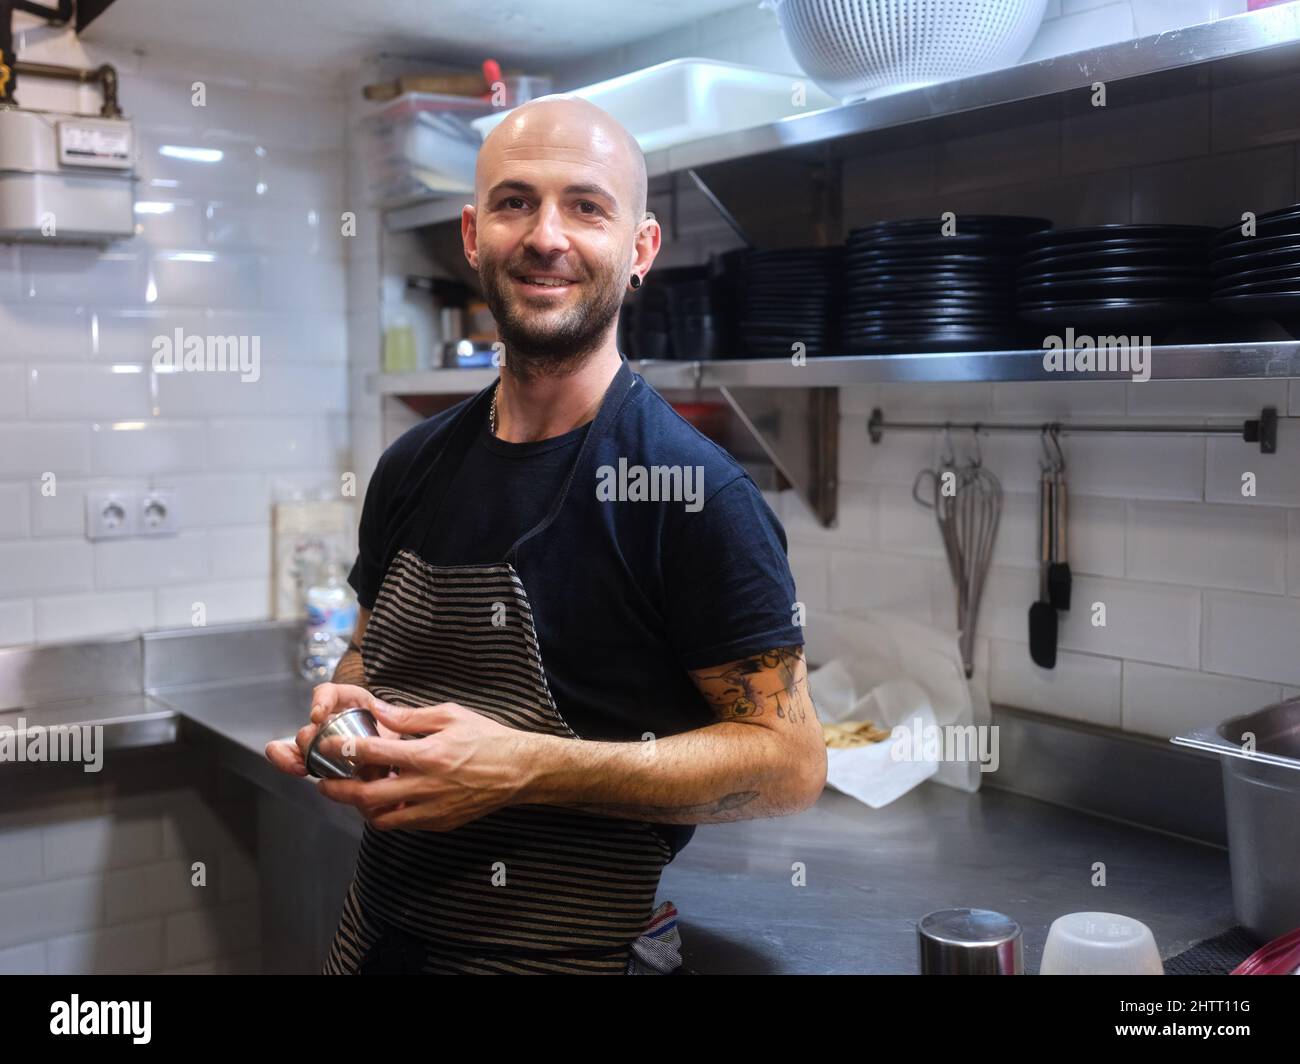 Chef avec un aspect alternatif debout sur une cuisine d'un restaurant Banque D'Images